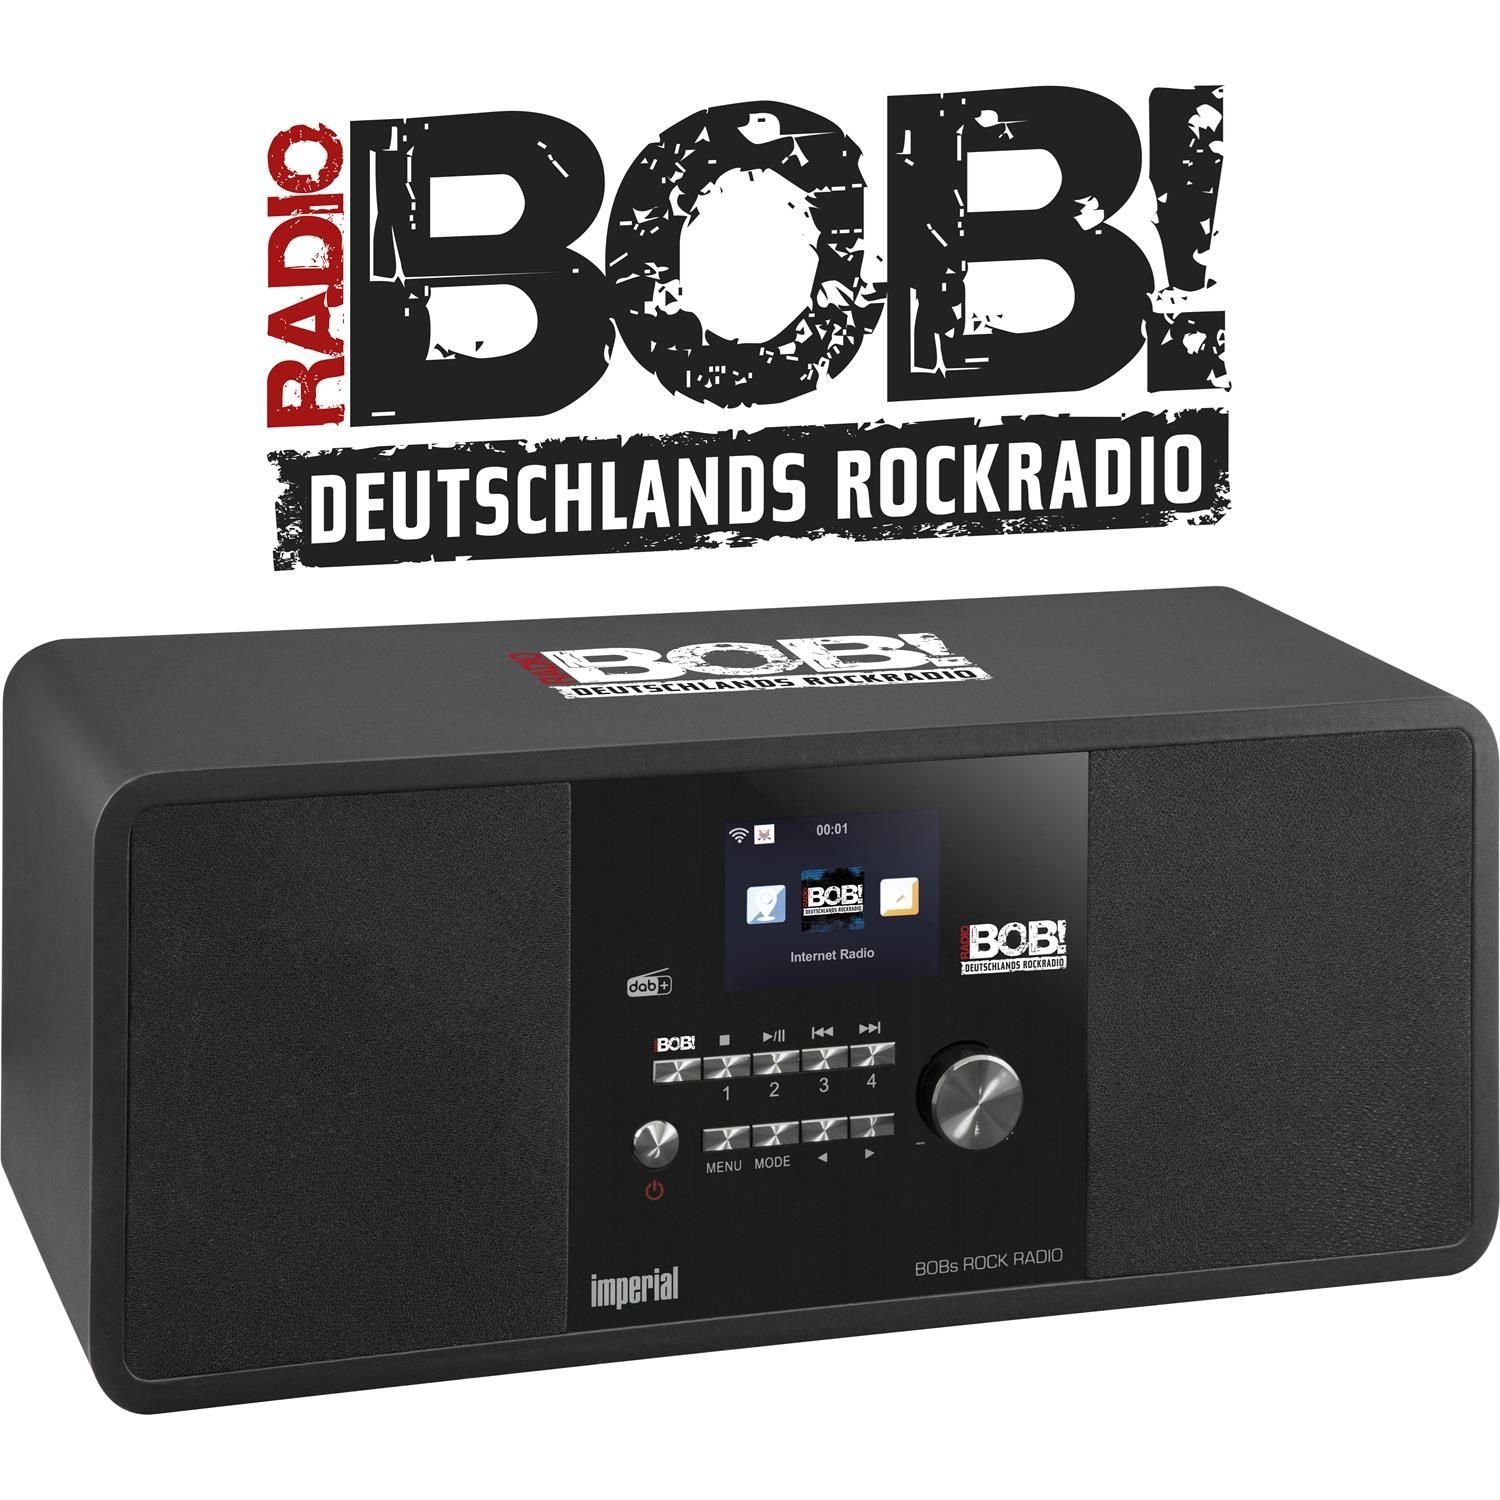 IMPERIAL by TELESTAR »BOBs ROCK RADIO Internet- und DAB+ Digitalradio  Sonderedition« Retro-Radio (Internetradio, DAB+, UKW, Wiedergabe von  Audiodateien über USB (MP3 etc) online kaufen | OTTO